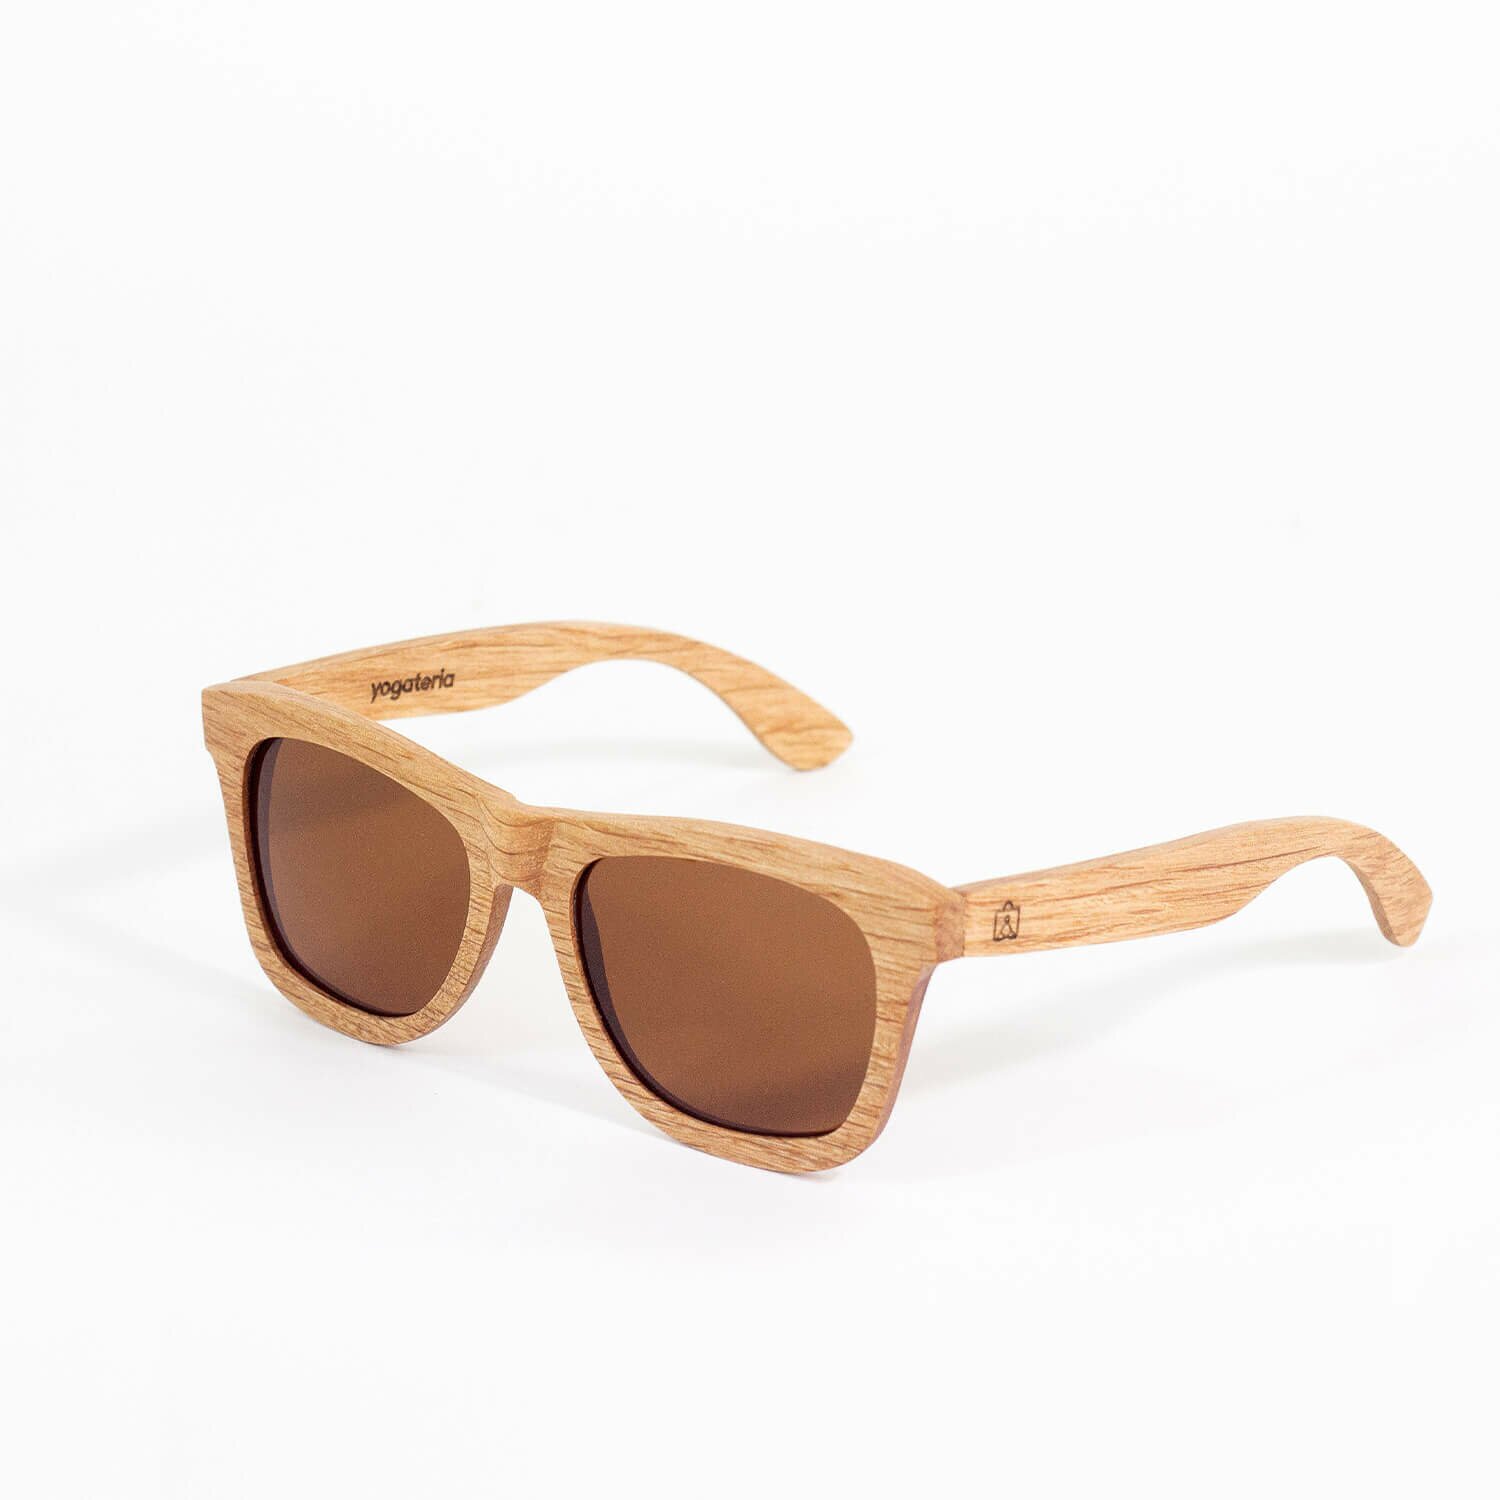 oculos-madeira-yogateria-noronha-1